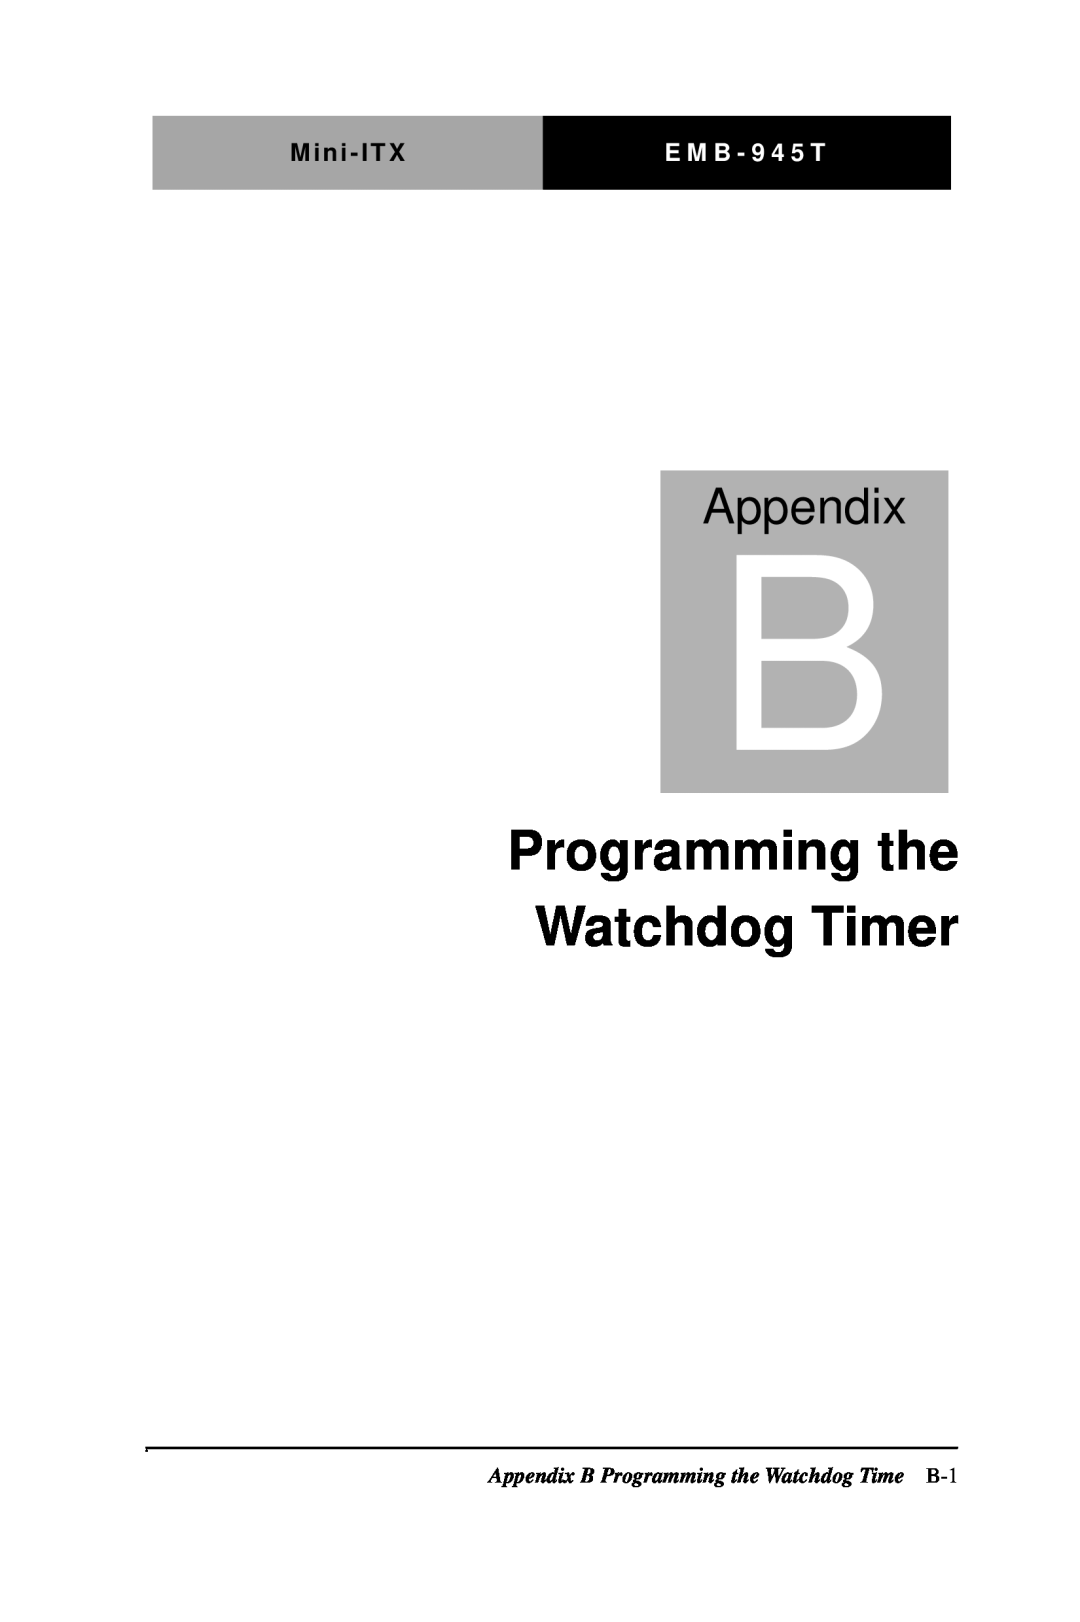 Intel EMB-945T manual Programming the Watchdog Timer, Appendix, Mini - ITX, E M B - 9 4 5 T 